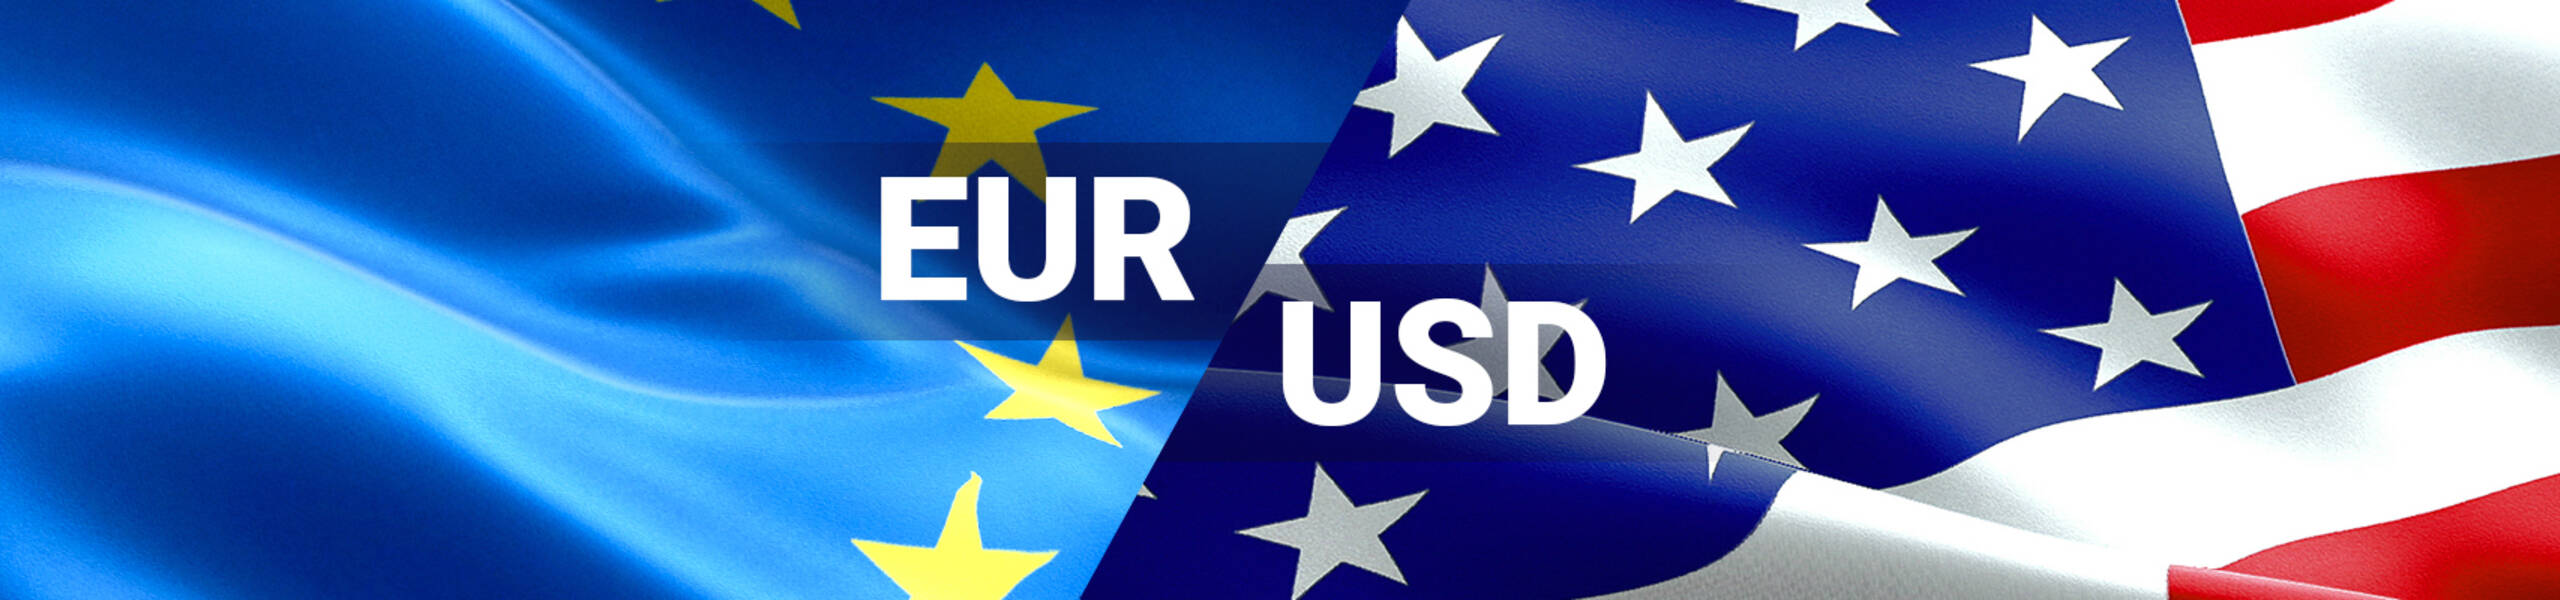 EUR/USD: euro will test Senkou Span B